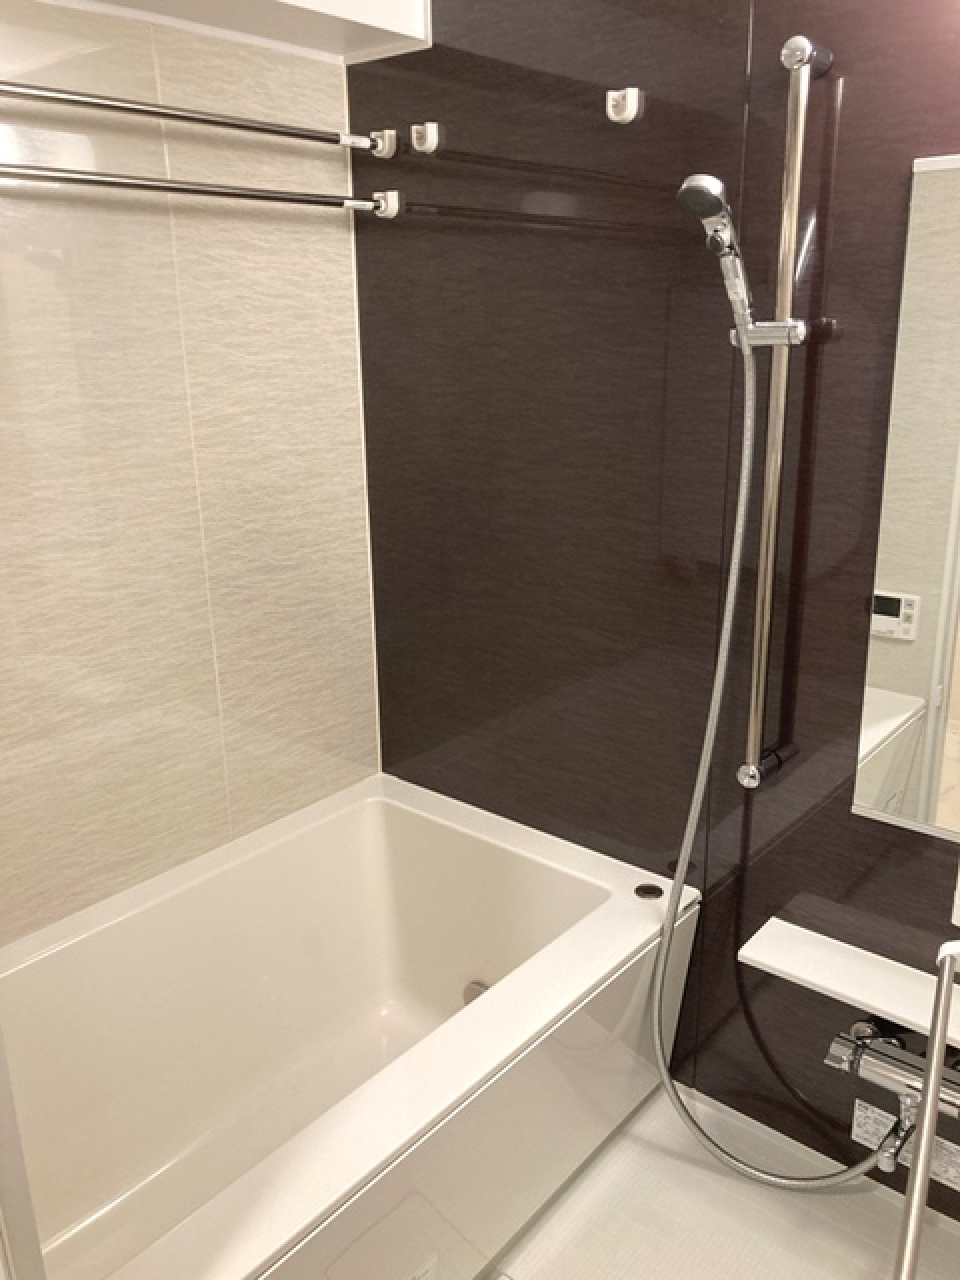 ダークトーンのパネルが導入された浴室です。※写真は同タイプ住戸です。